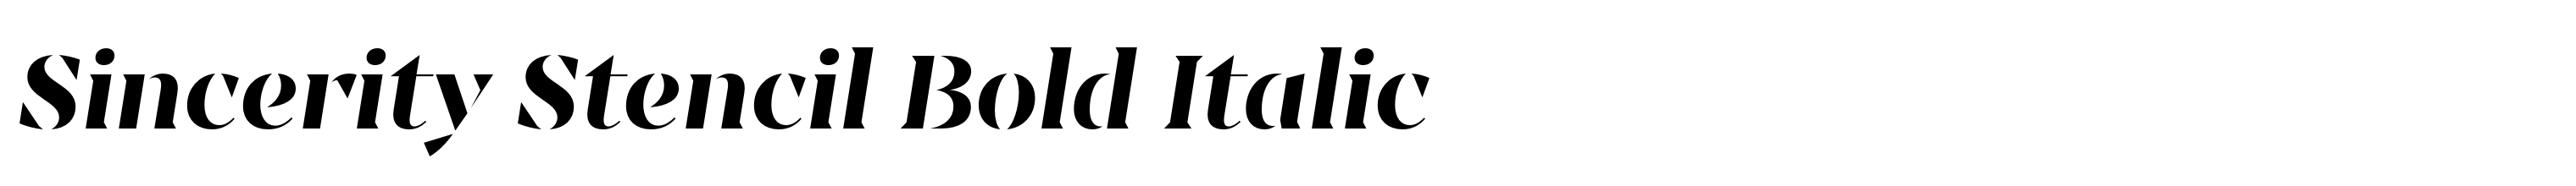 Sincerity Stencil Bold Italic